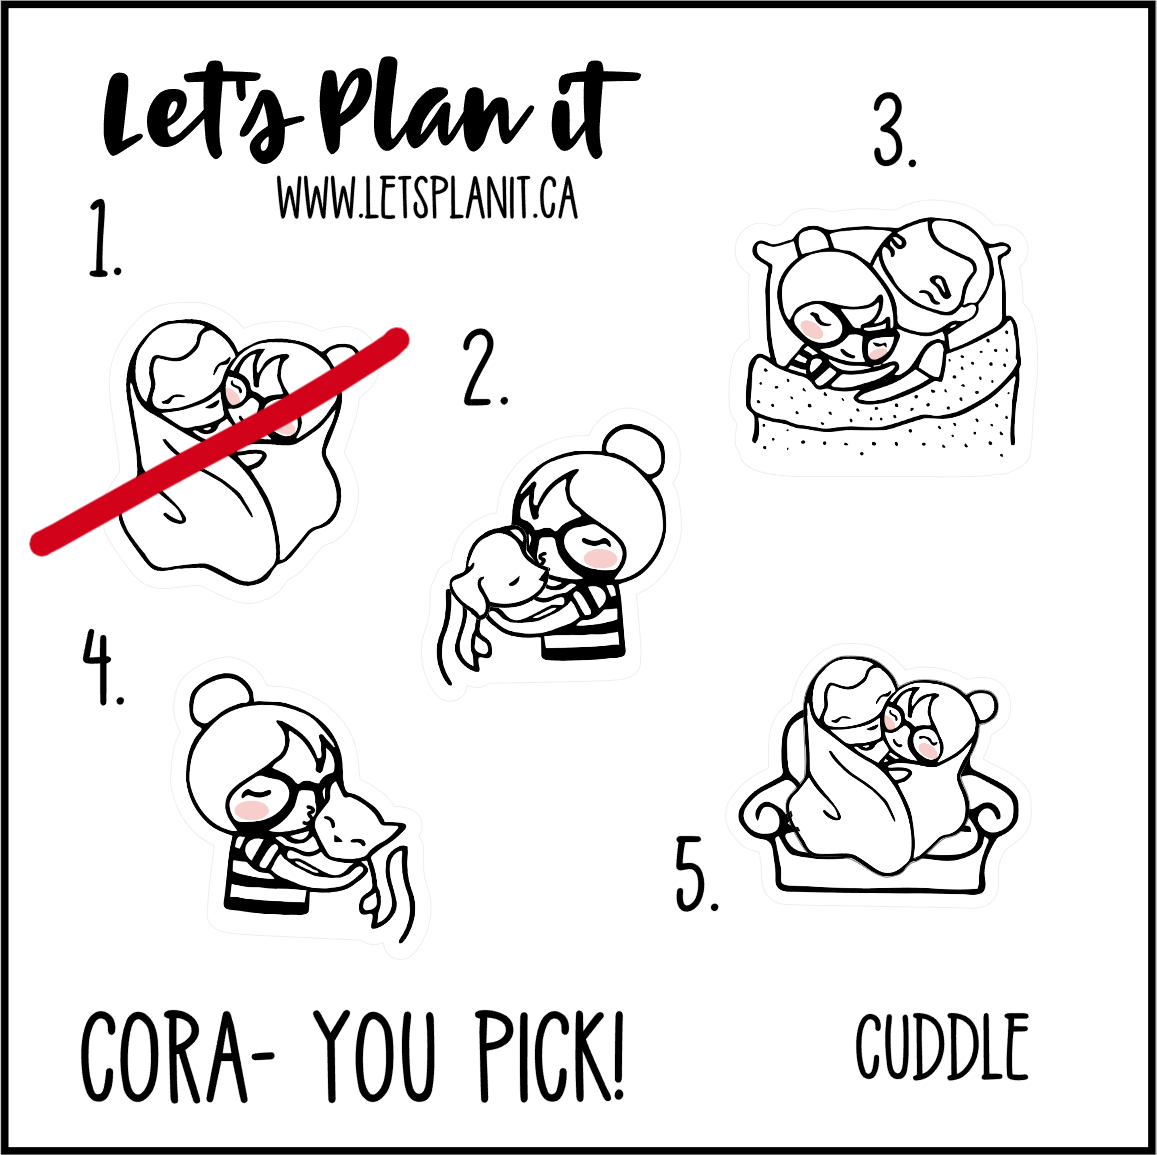 Cora-u-pick- Cuddle